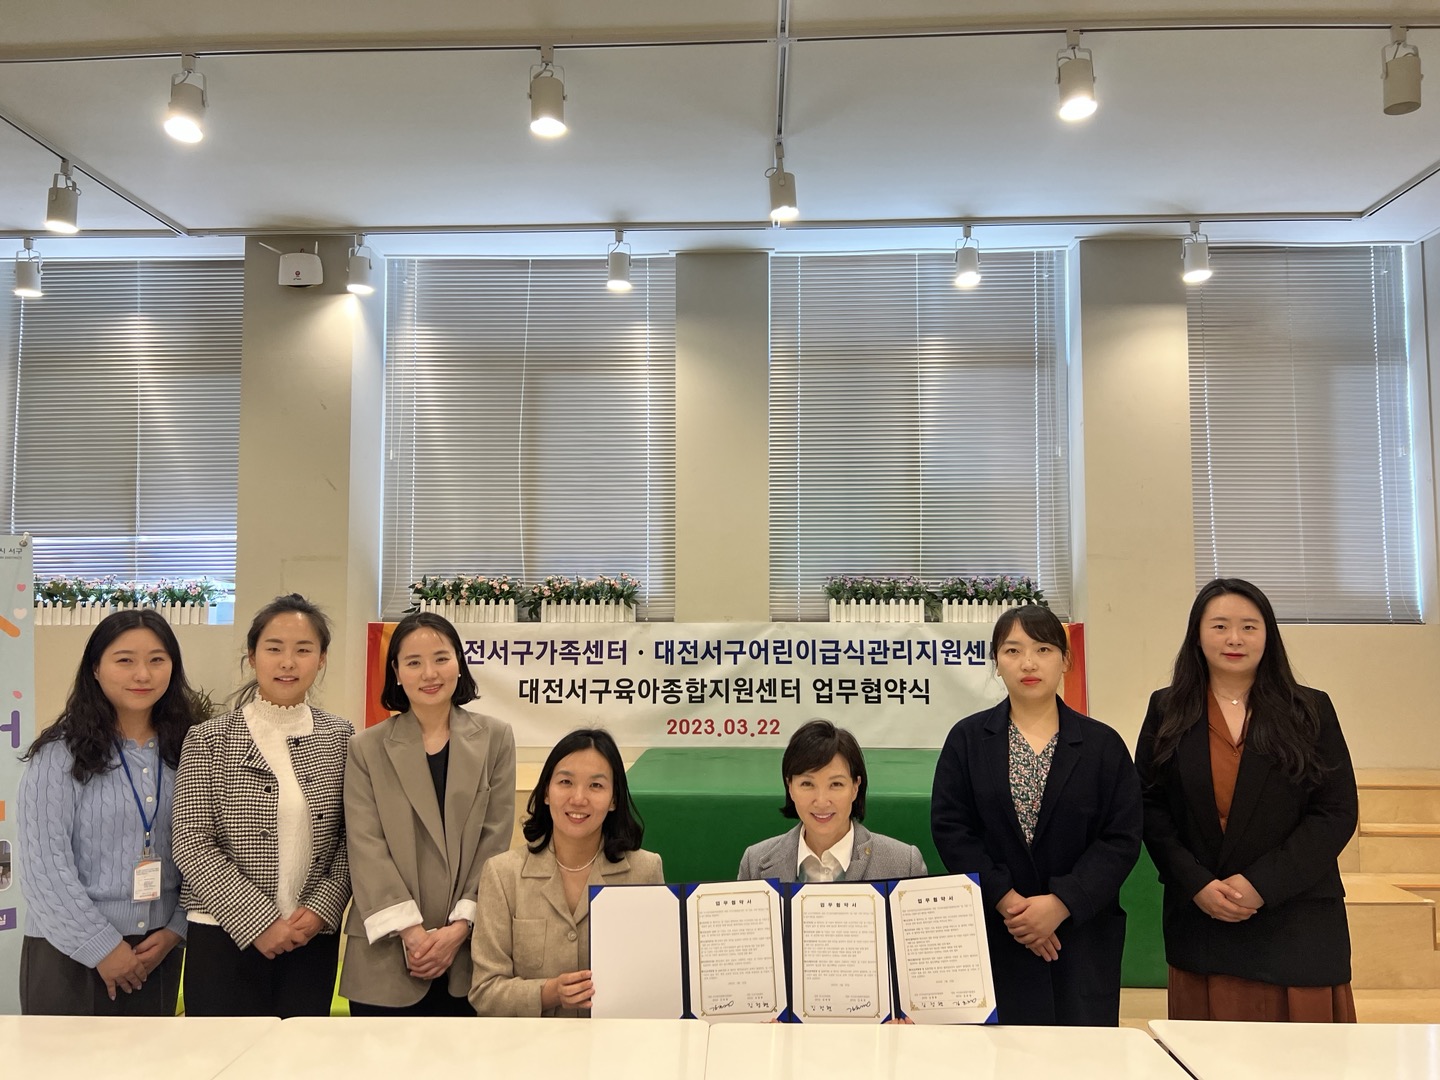 대전서구어린이급식관리지원센터와 대전서구육아종합지원센터가 업무협약을 진행하고 기념촬영을 하고 있다.